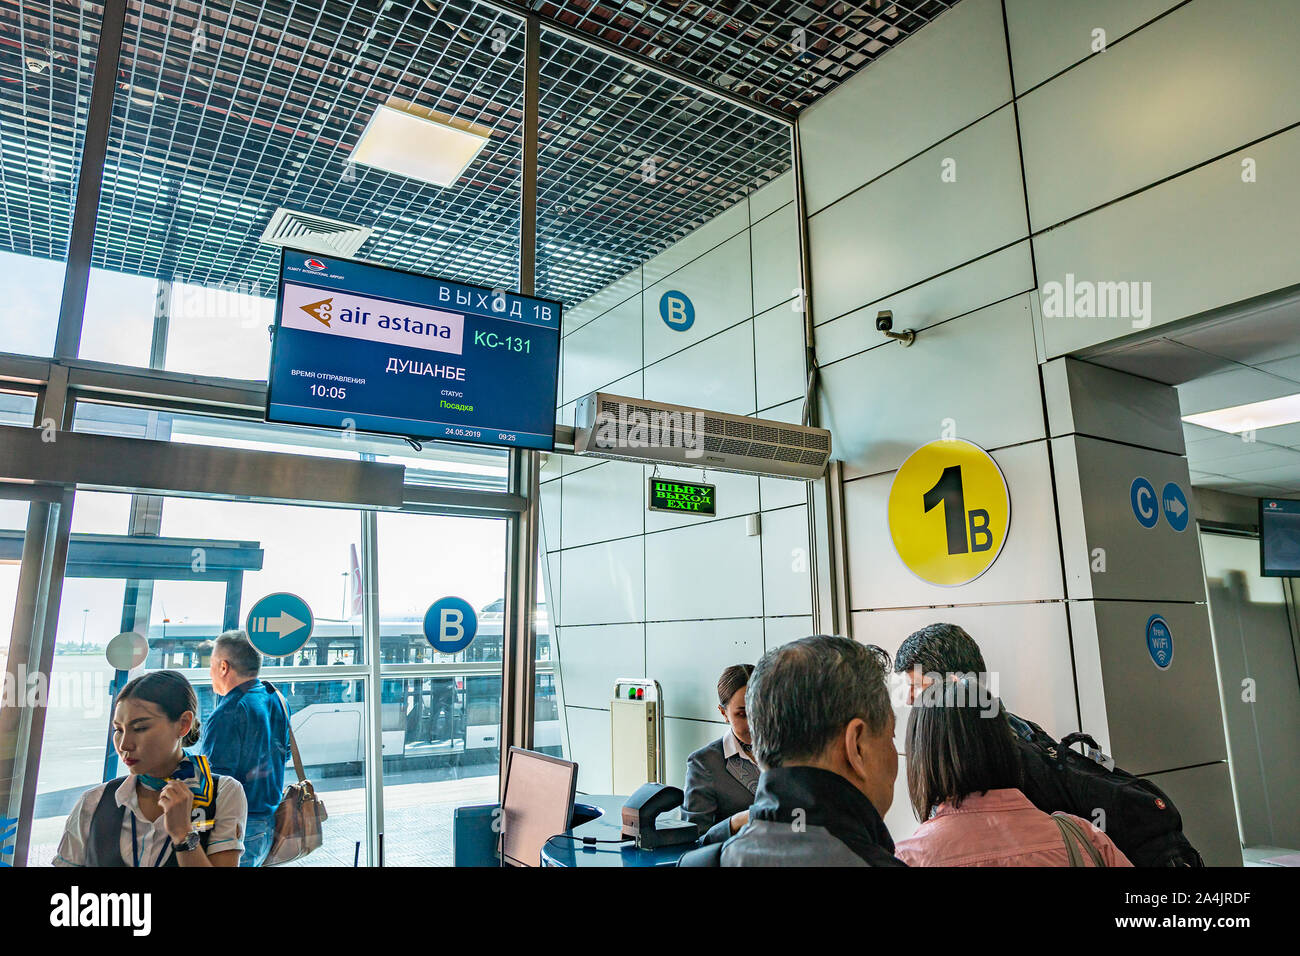 Les gens de l'Aéroport International d'Almaty à porte de départ sont à l'embarquement pour leur vol vers Dushanbe avec Air Astana Banque D'Images